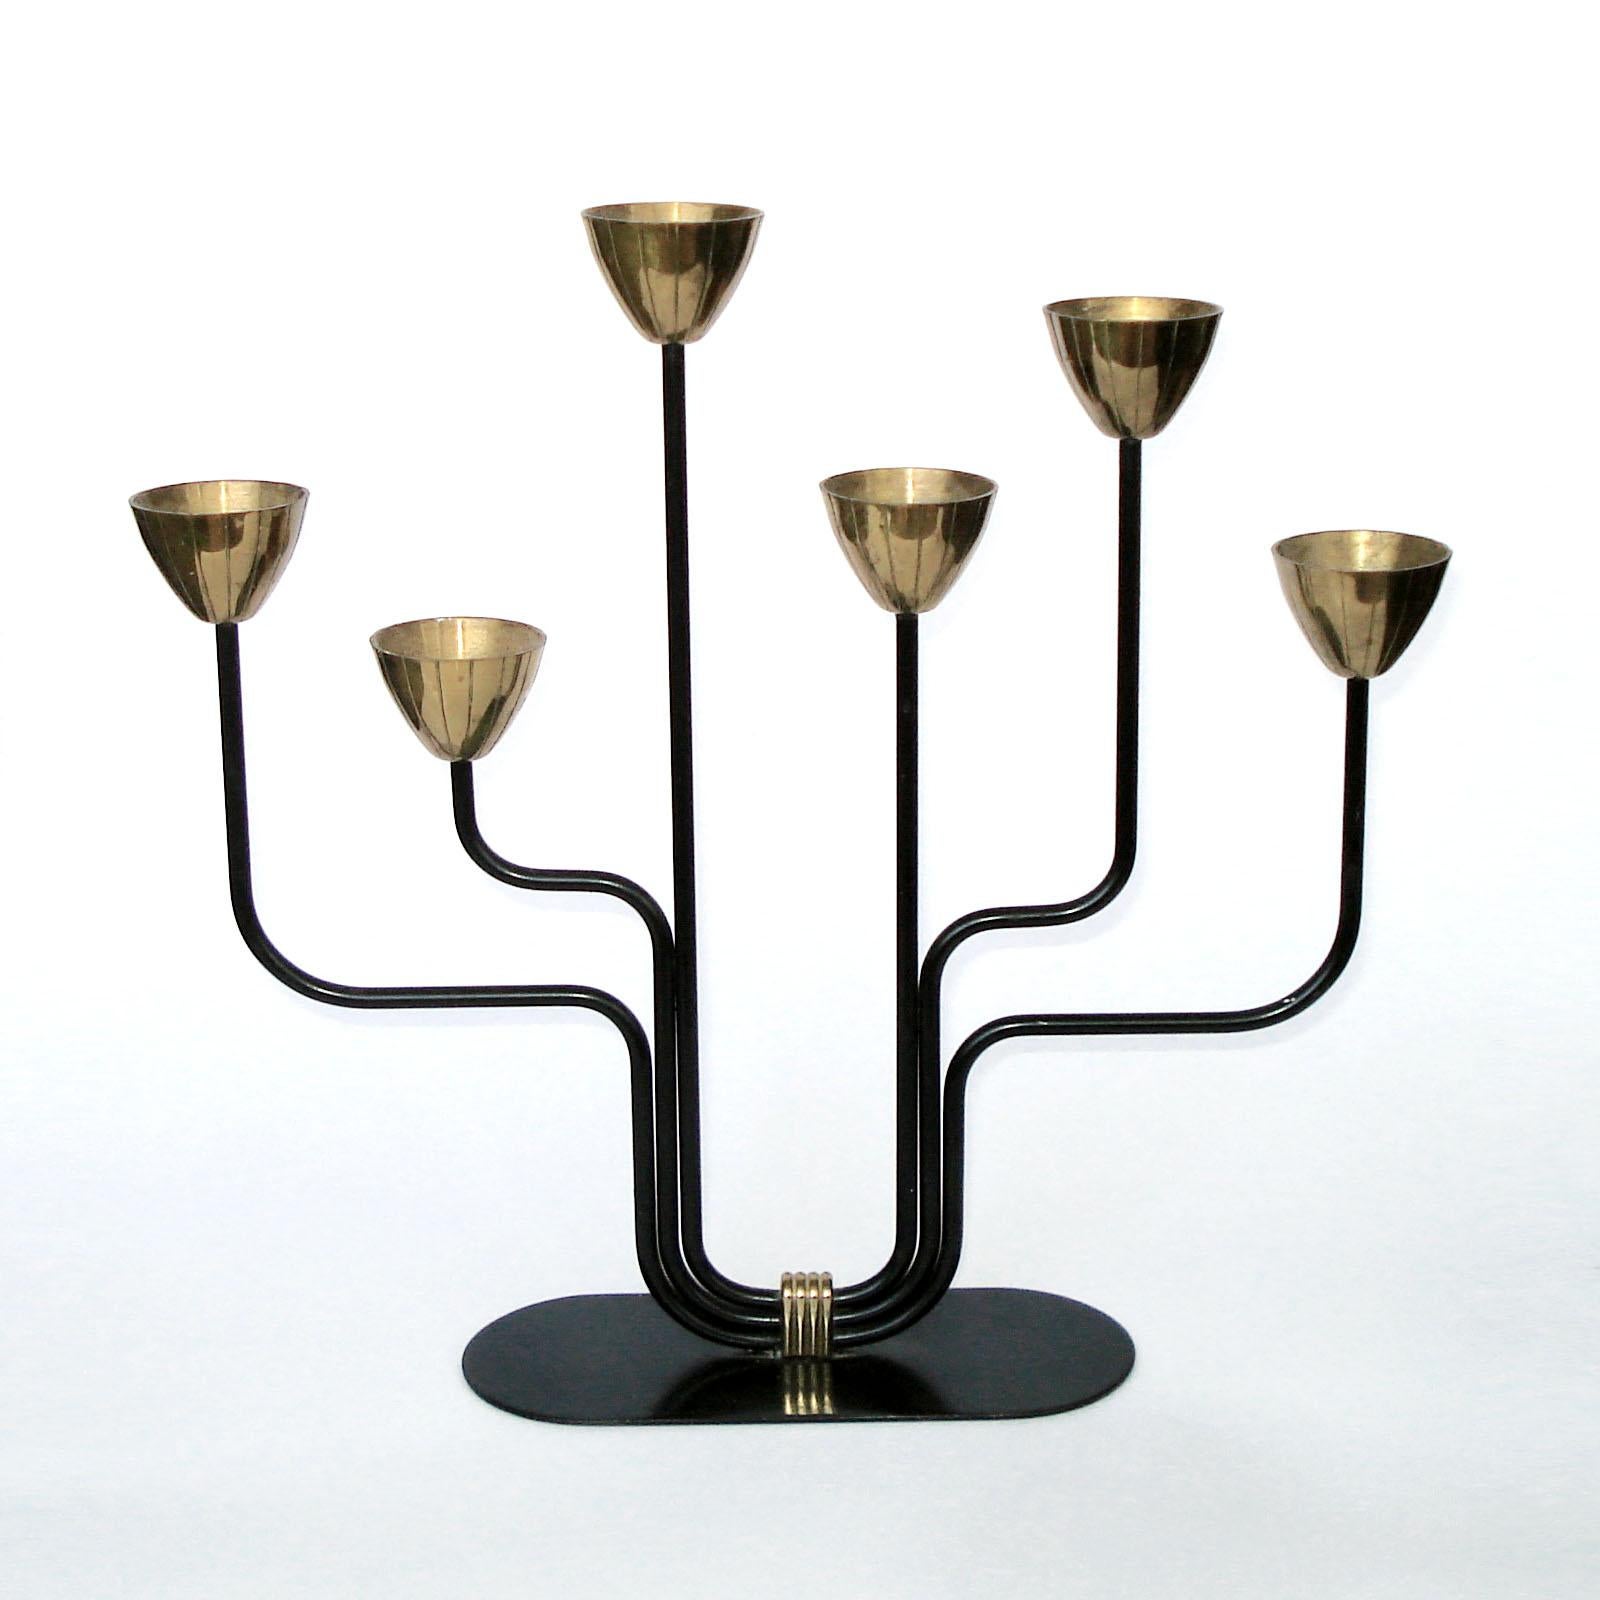 Kandelaber aus Messing und geschwärztem Metall für dünne Kerzen. Entworfen von Gunnar Ander für Ystad Metall Schweden. Gestempelt 